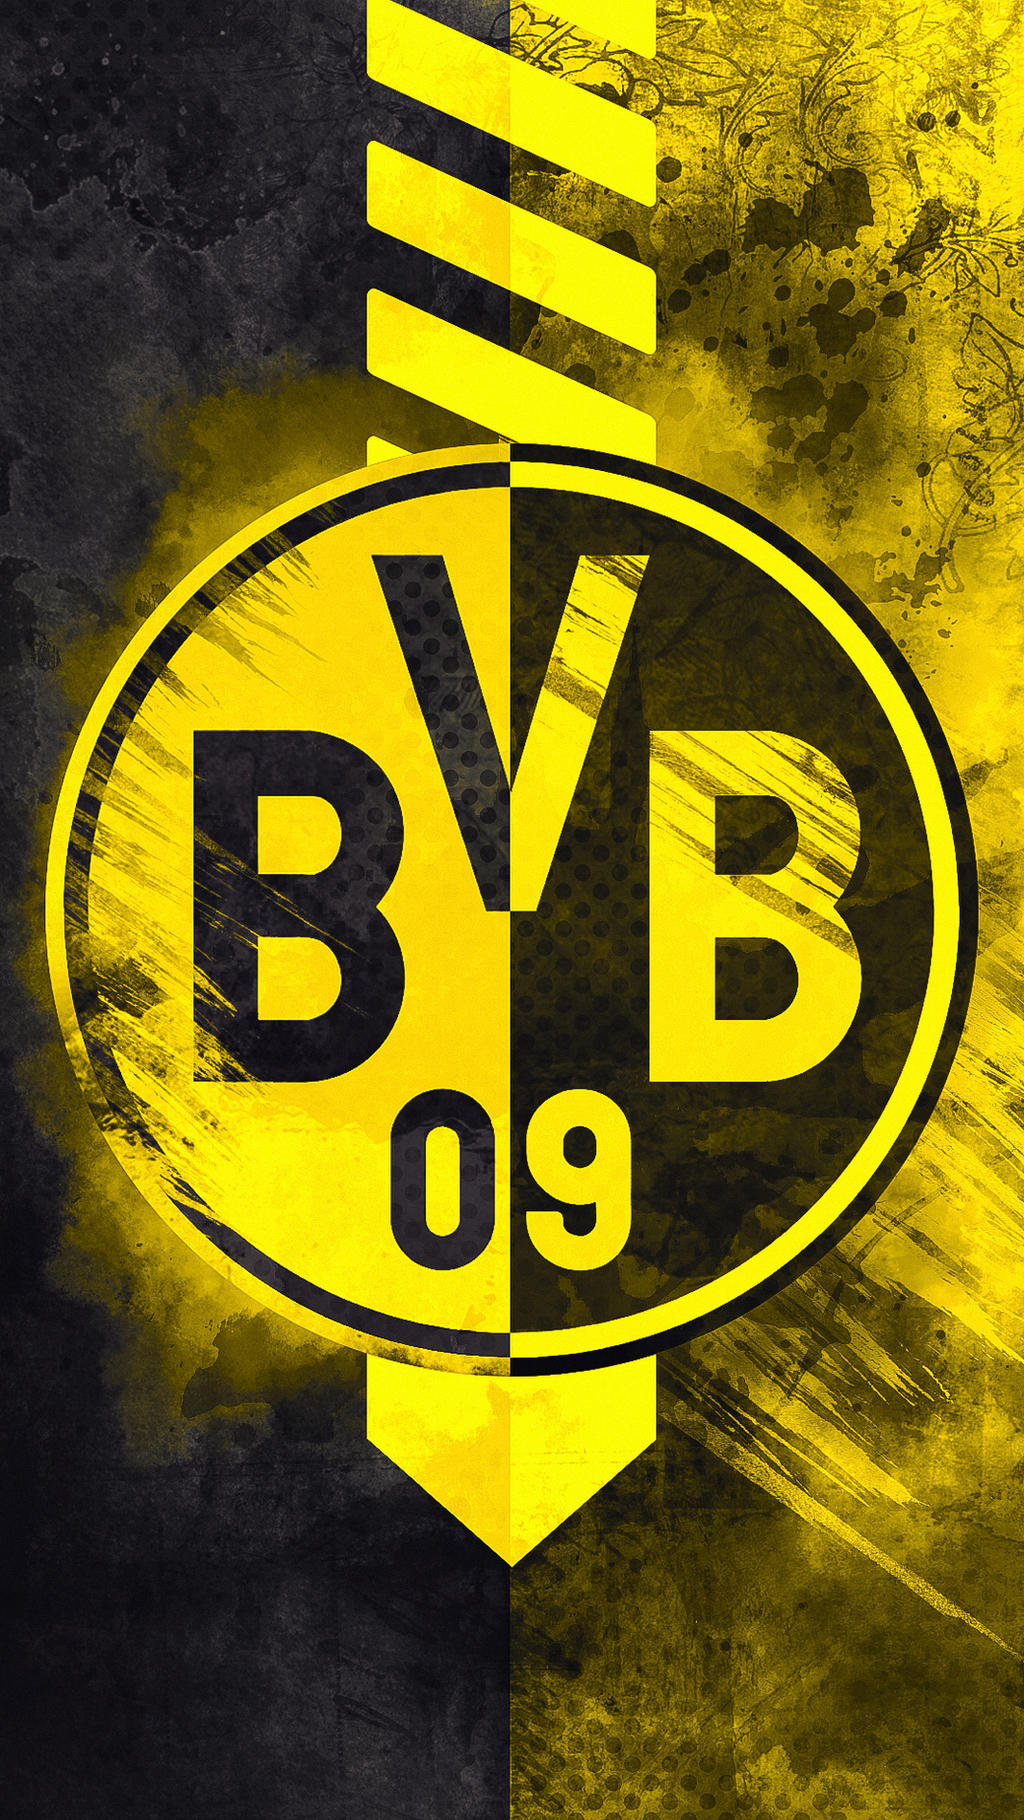 Borussia Dortmund - HD Logo Wallpaper by Kerimov23 on DeviantArt